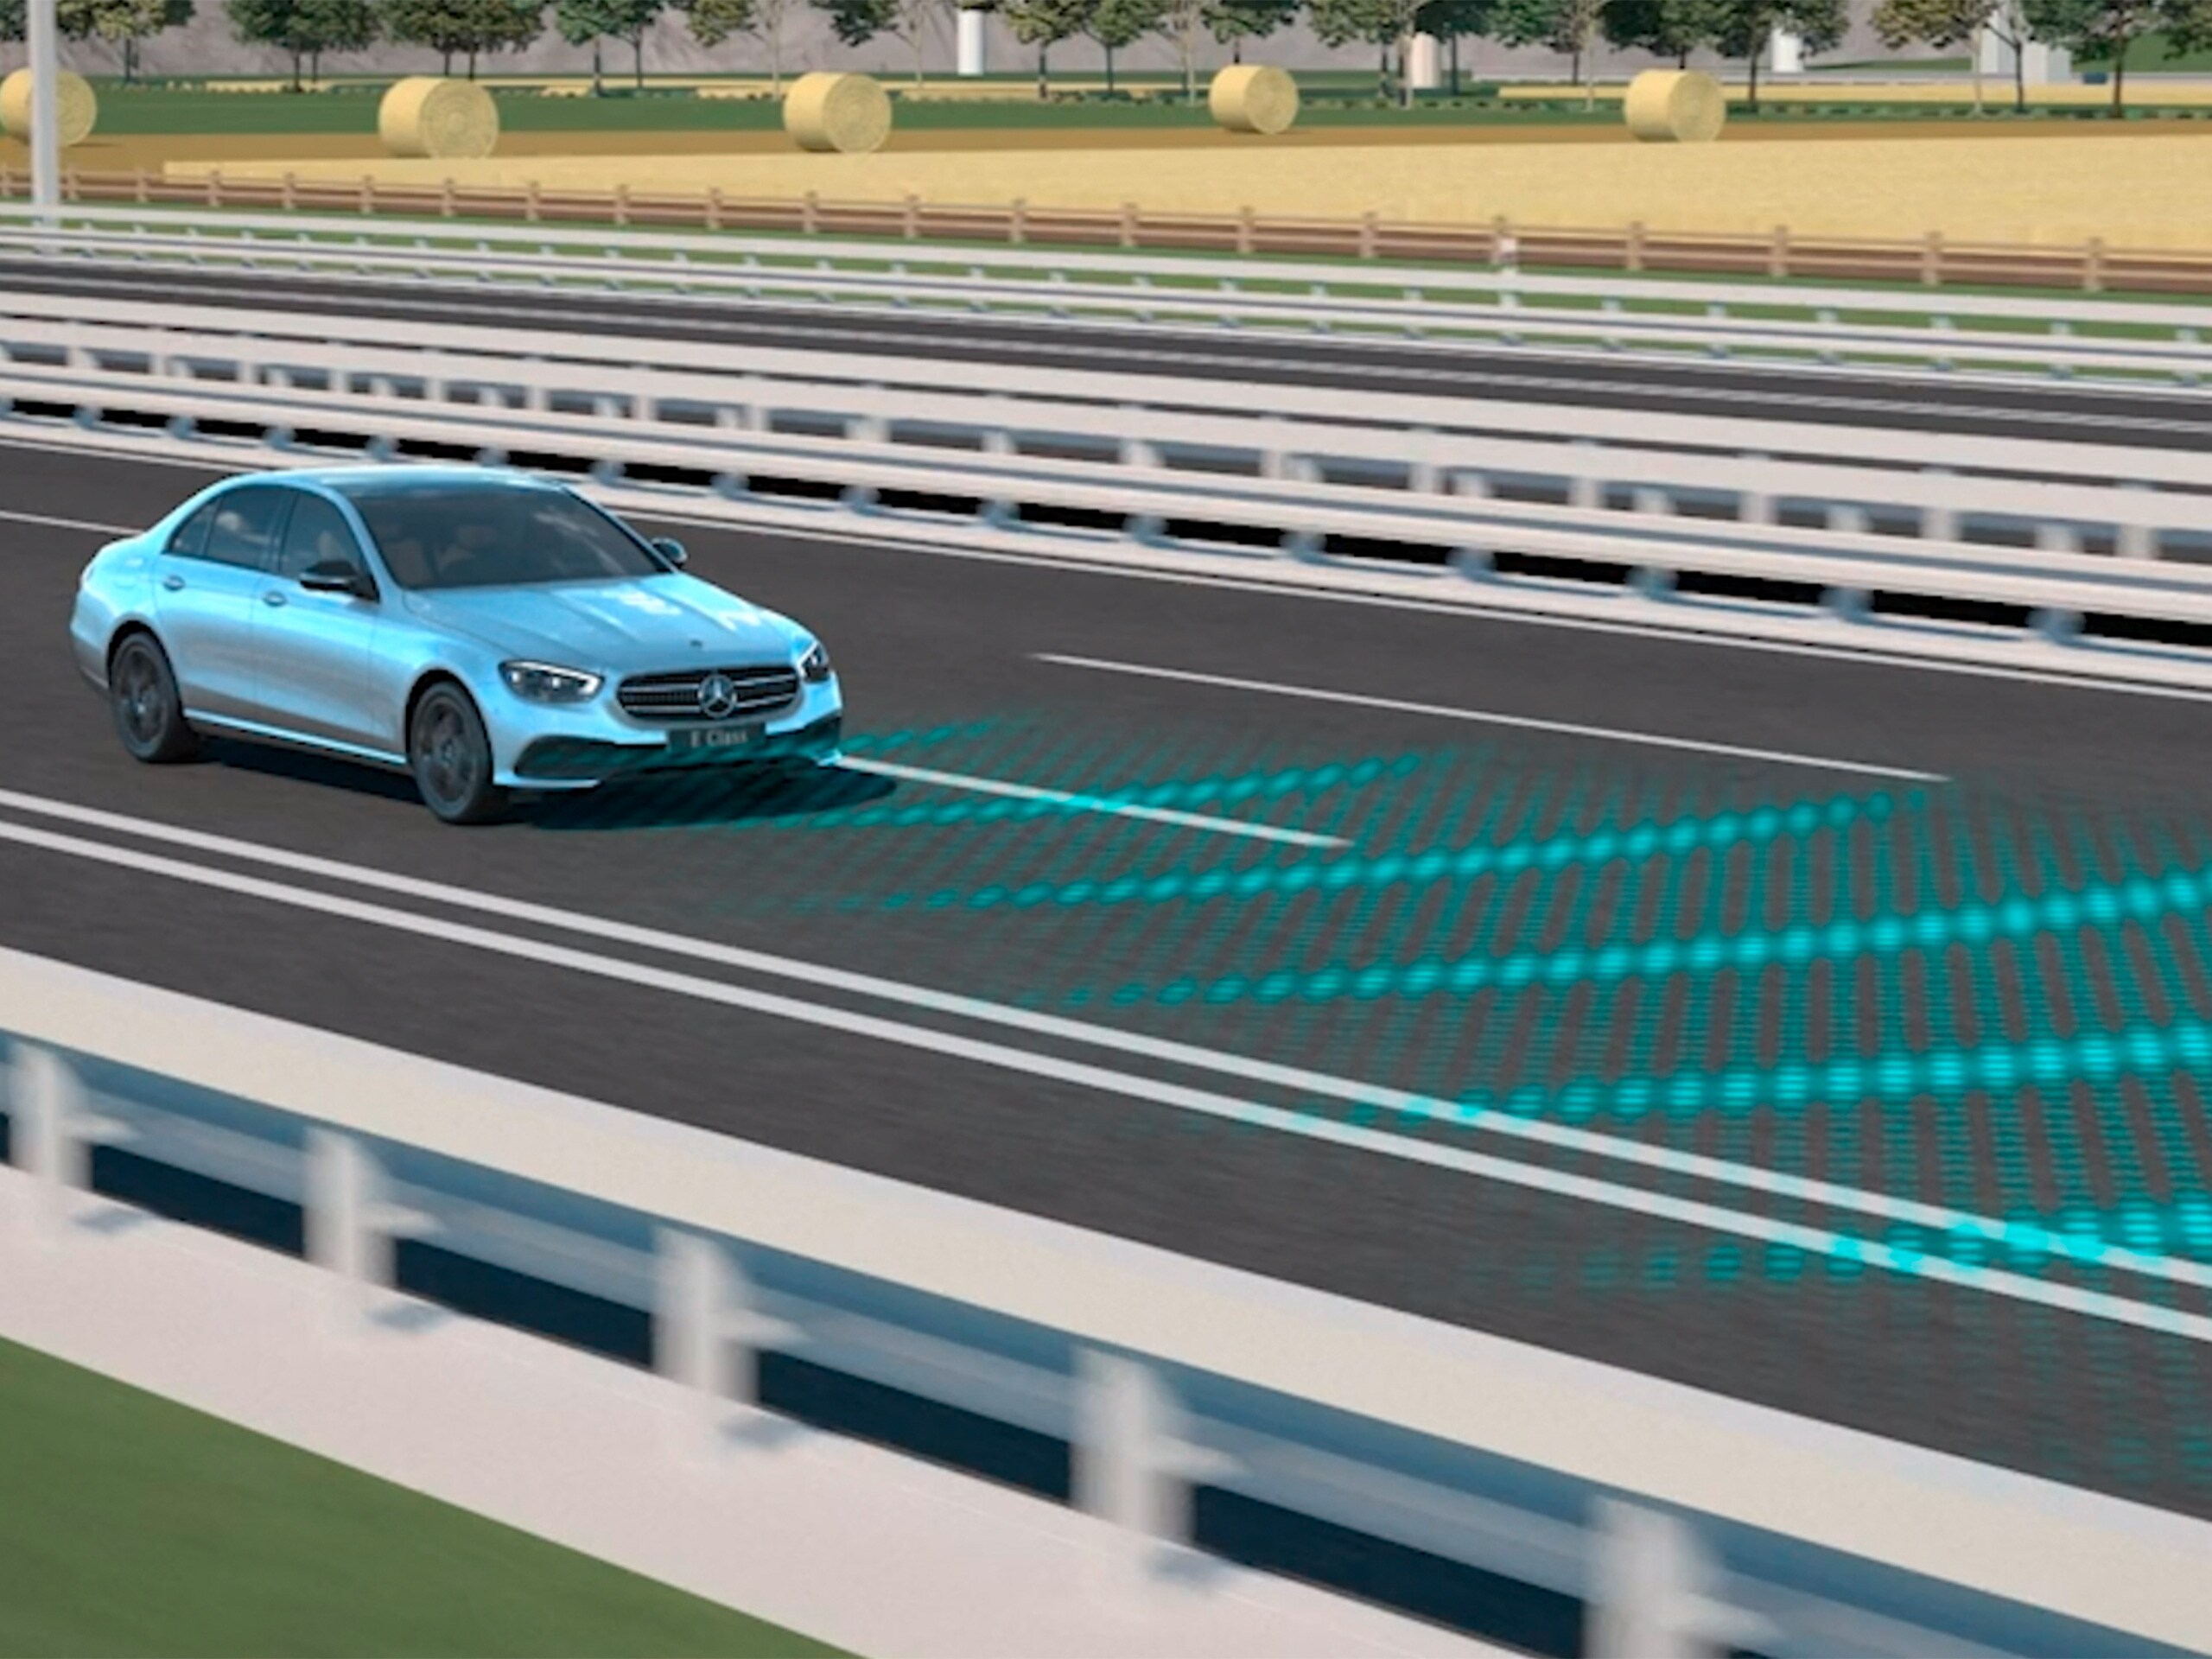 Videoclipul prezintă funcționarea asistentului activ pentru păstrarea distanței între autovehicule DISTRONIC la modelul Mercedes-Benz CLS Coupé.